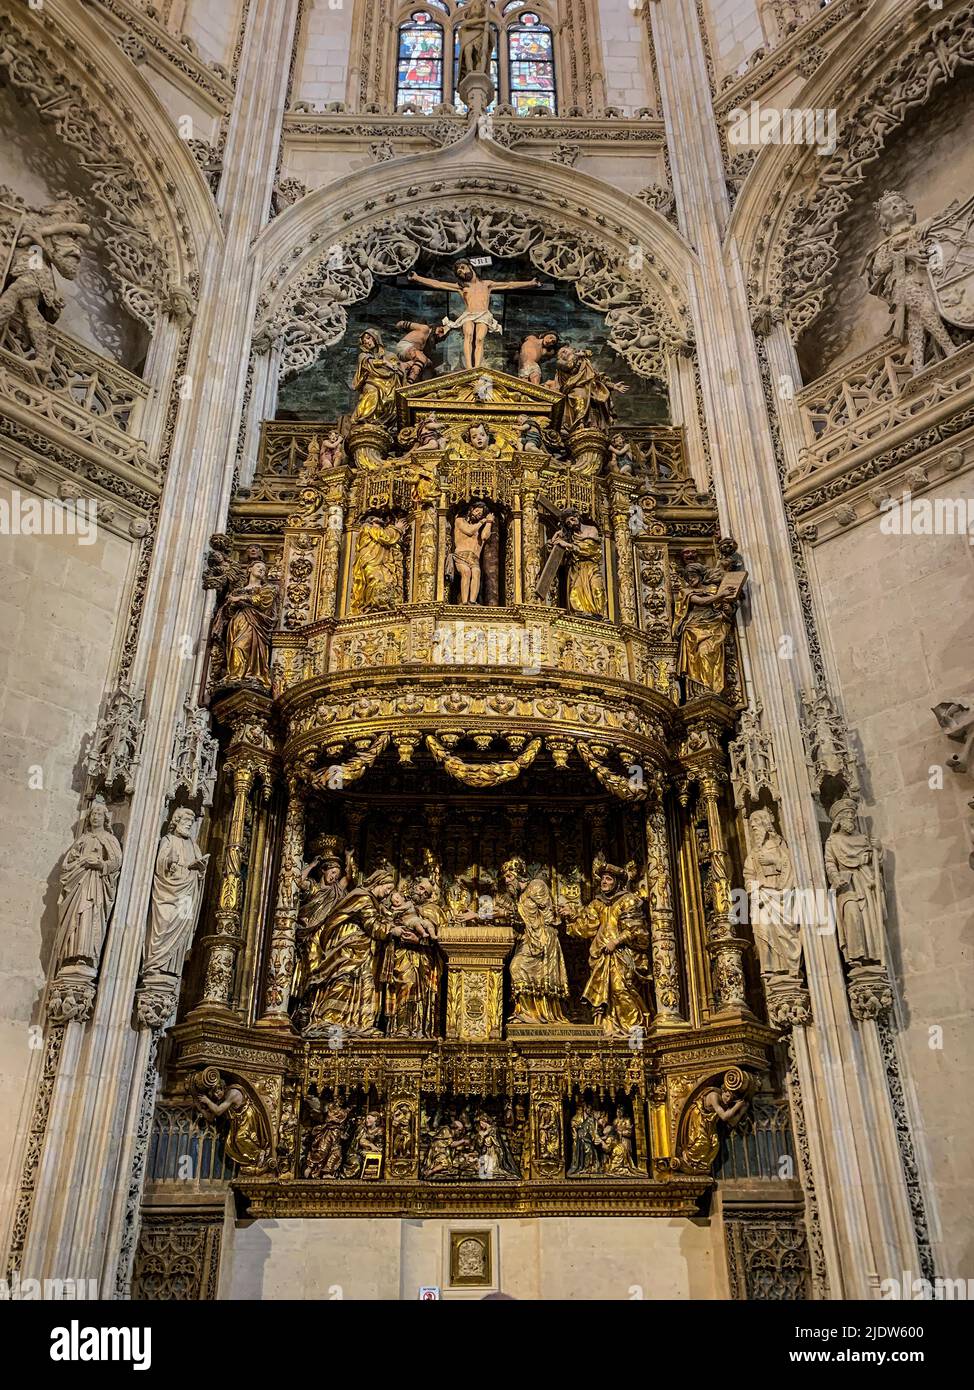 Espagne, Burgos. Cathédrale de Santa Maria, site classé au patrimoine mondial. Retable dans le Capilla de los Condestables. Banque D'Images